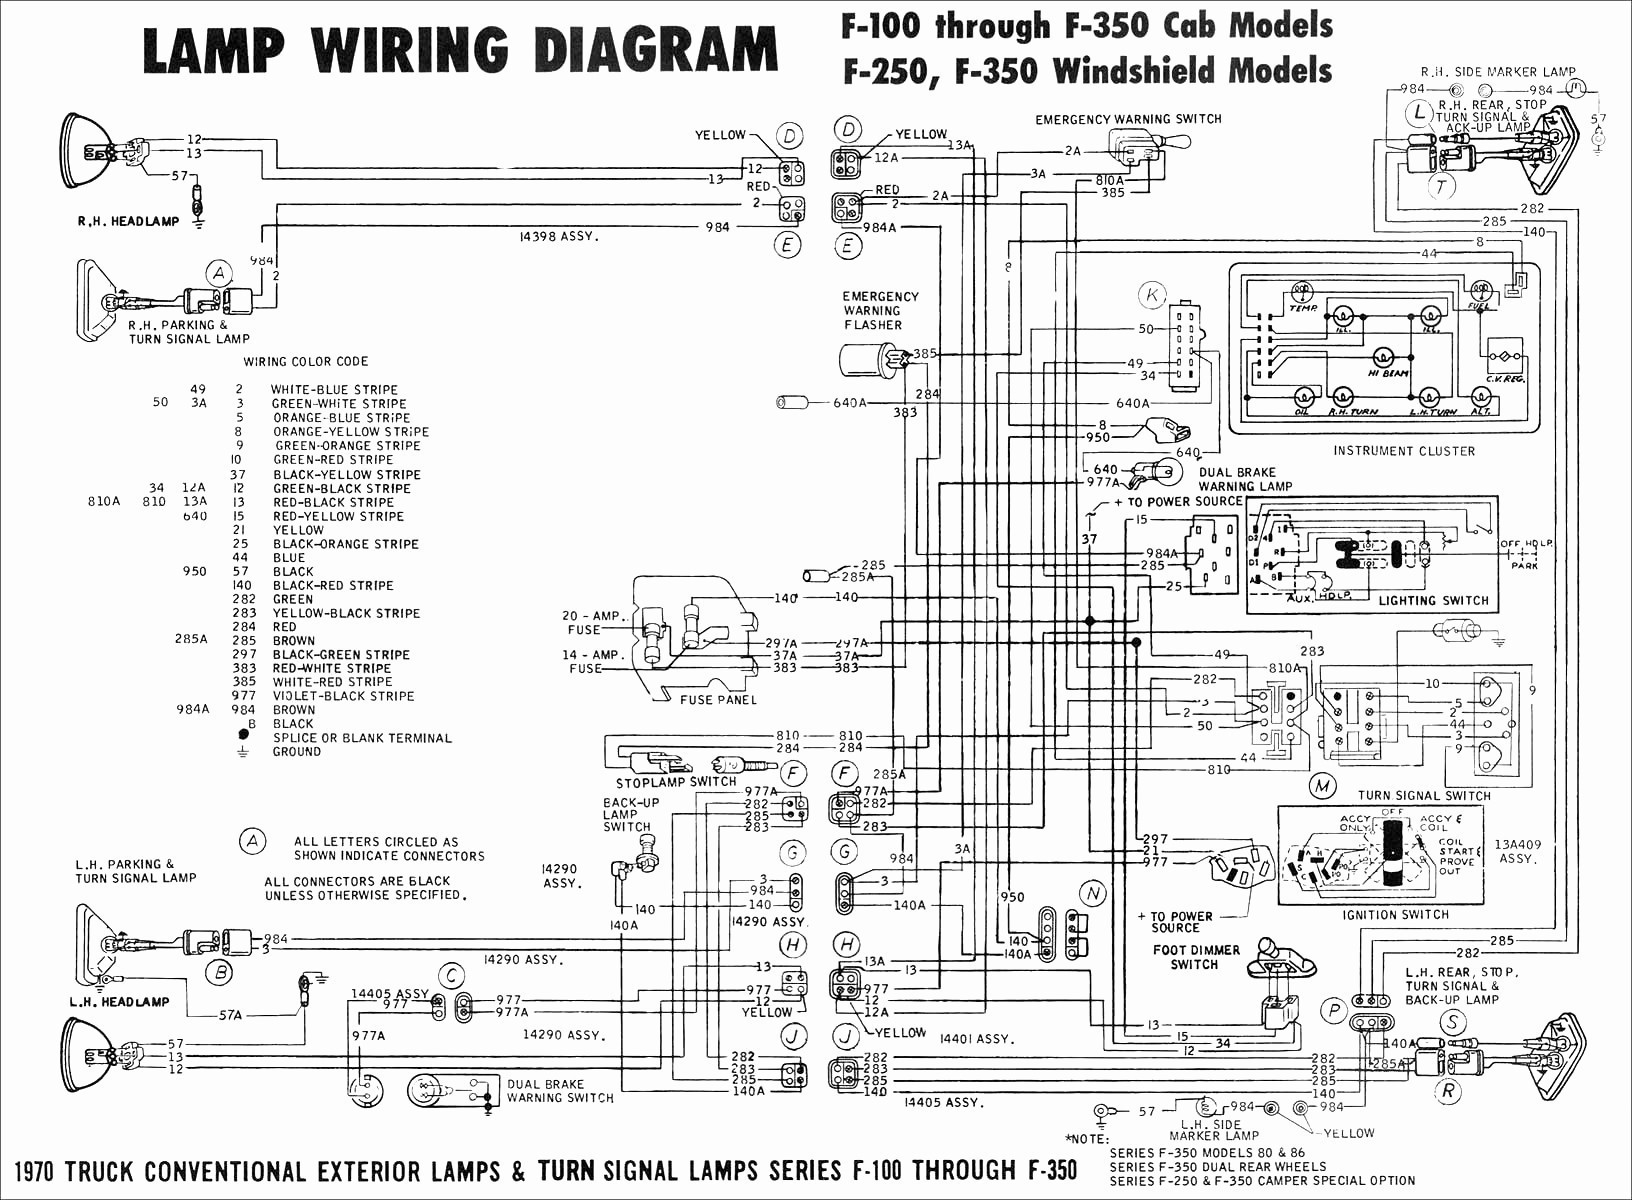 2003 ford F150 4 6 Engine Diagram 86 F150 4 9l Wiring Diagram Wiring Diagram toolbox Of 2003 ford F150 4 6 Engine Diagram